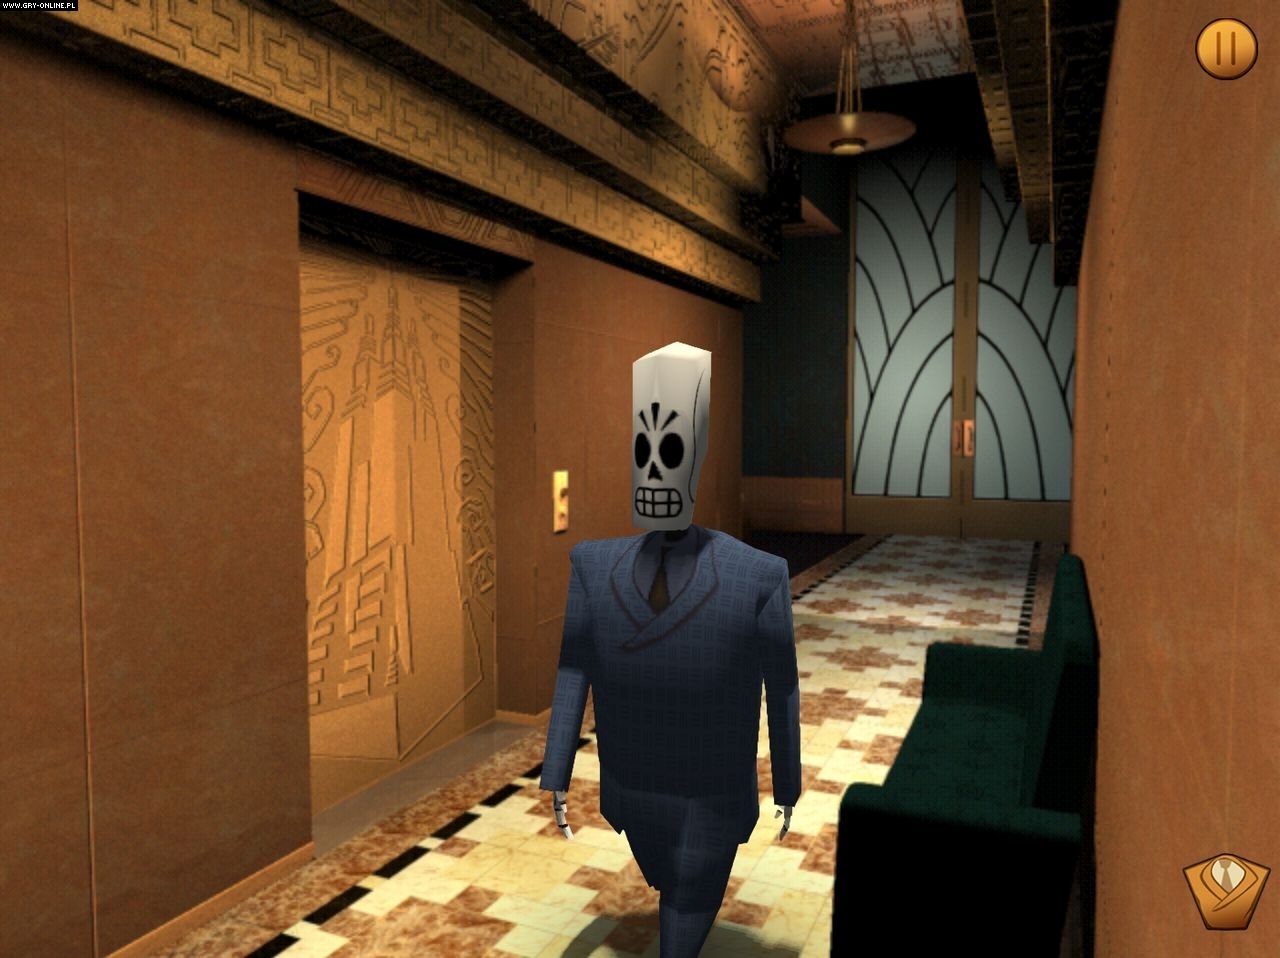 Скриншот из игры Grim Fandango Remastered под номером 11